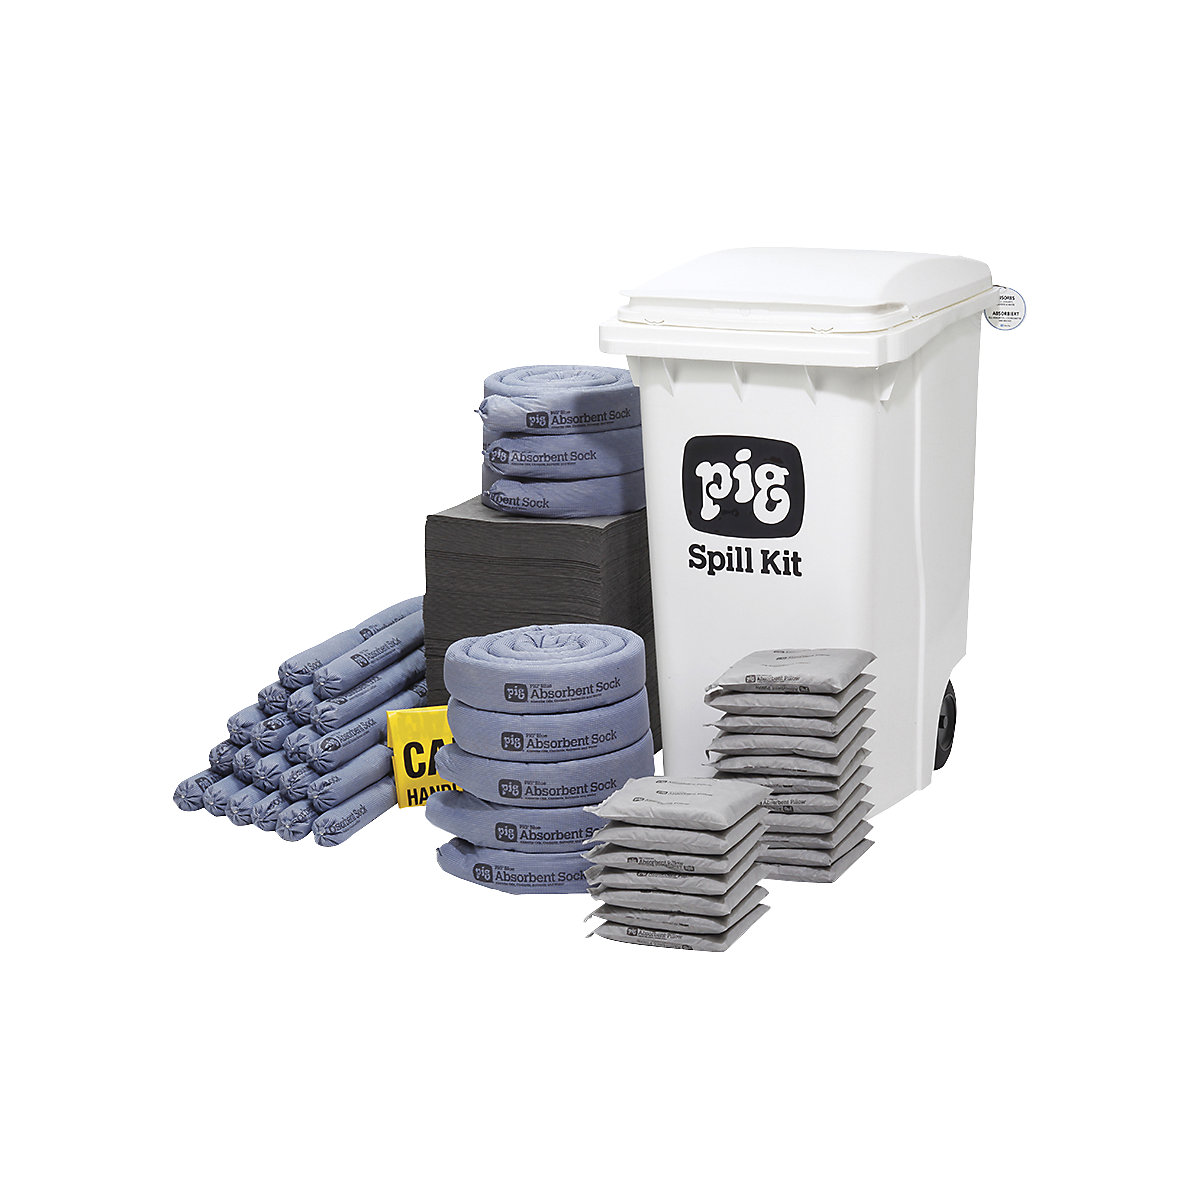 Mobiele kit voor noodgevallen, groot – PIG